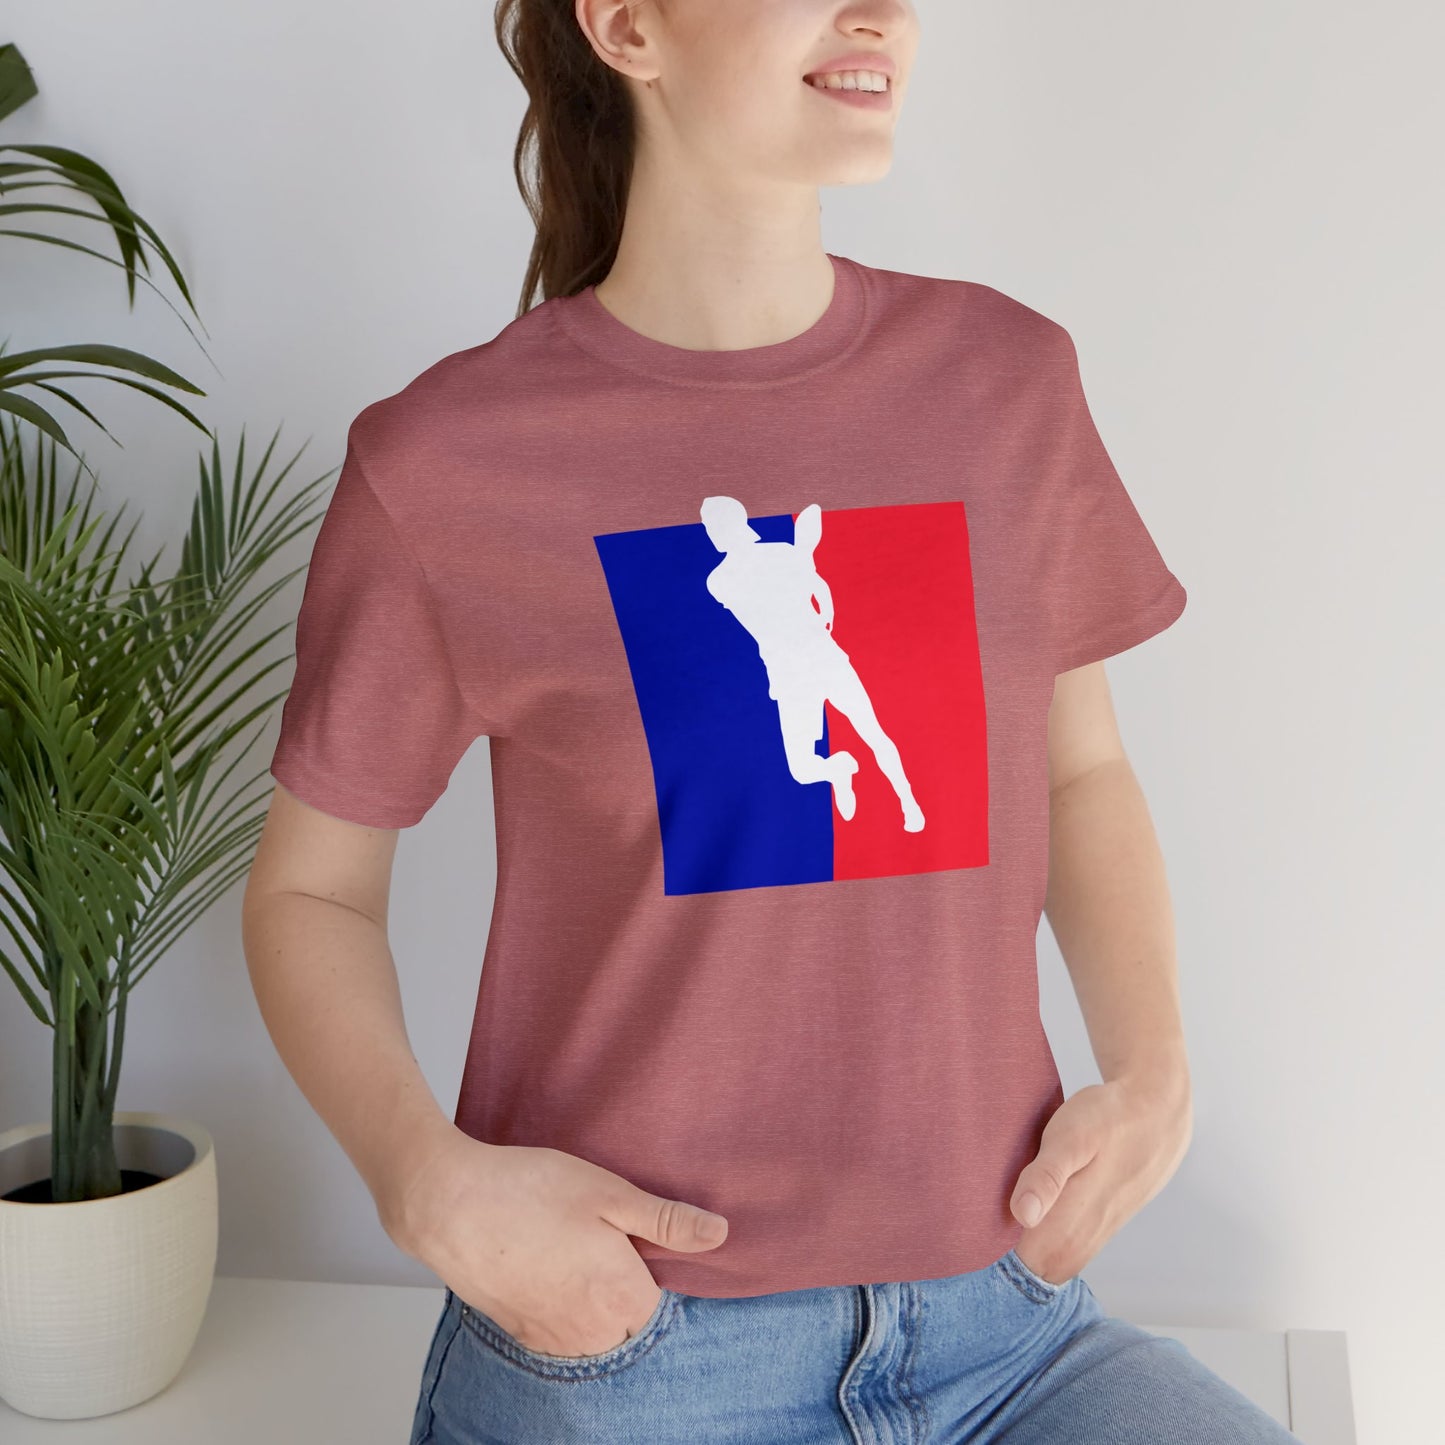 Unisex Pickleball Player Logo Cool, Unique Design Premium T-Shirt